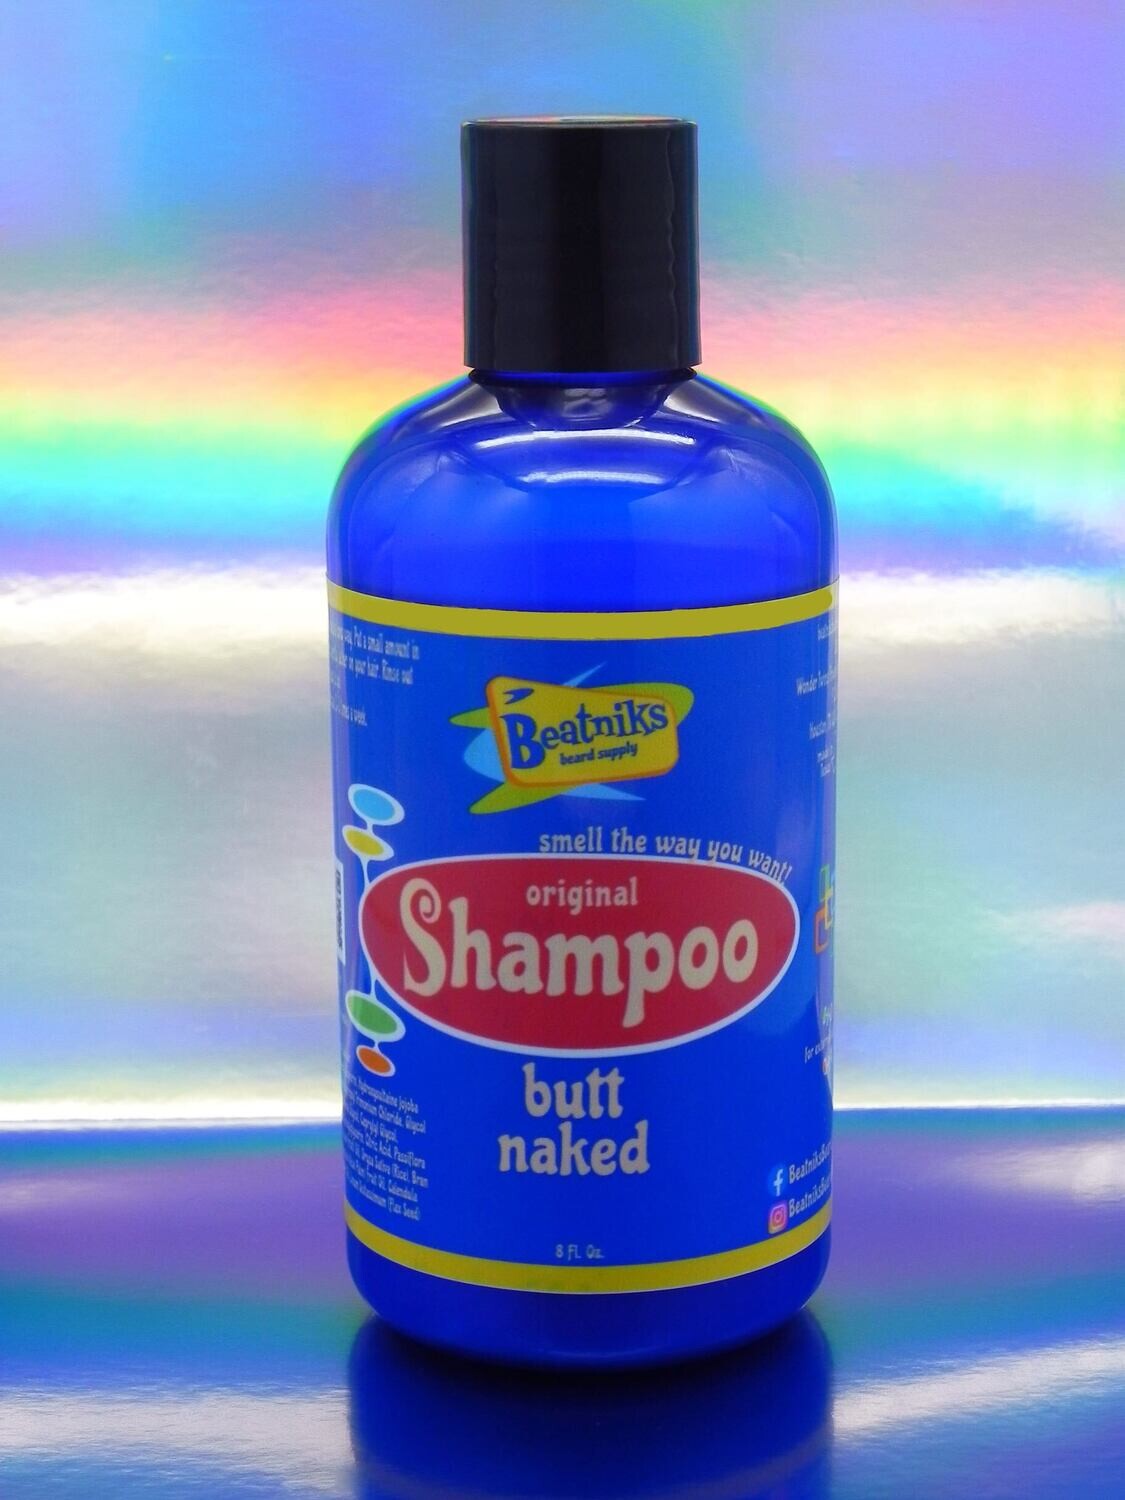 BUTT NAKED | Shampoo